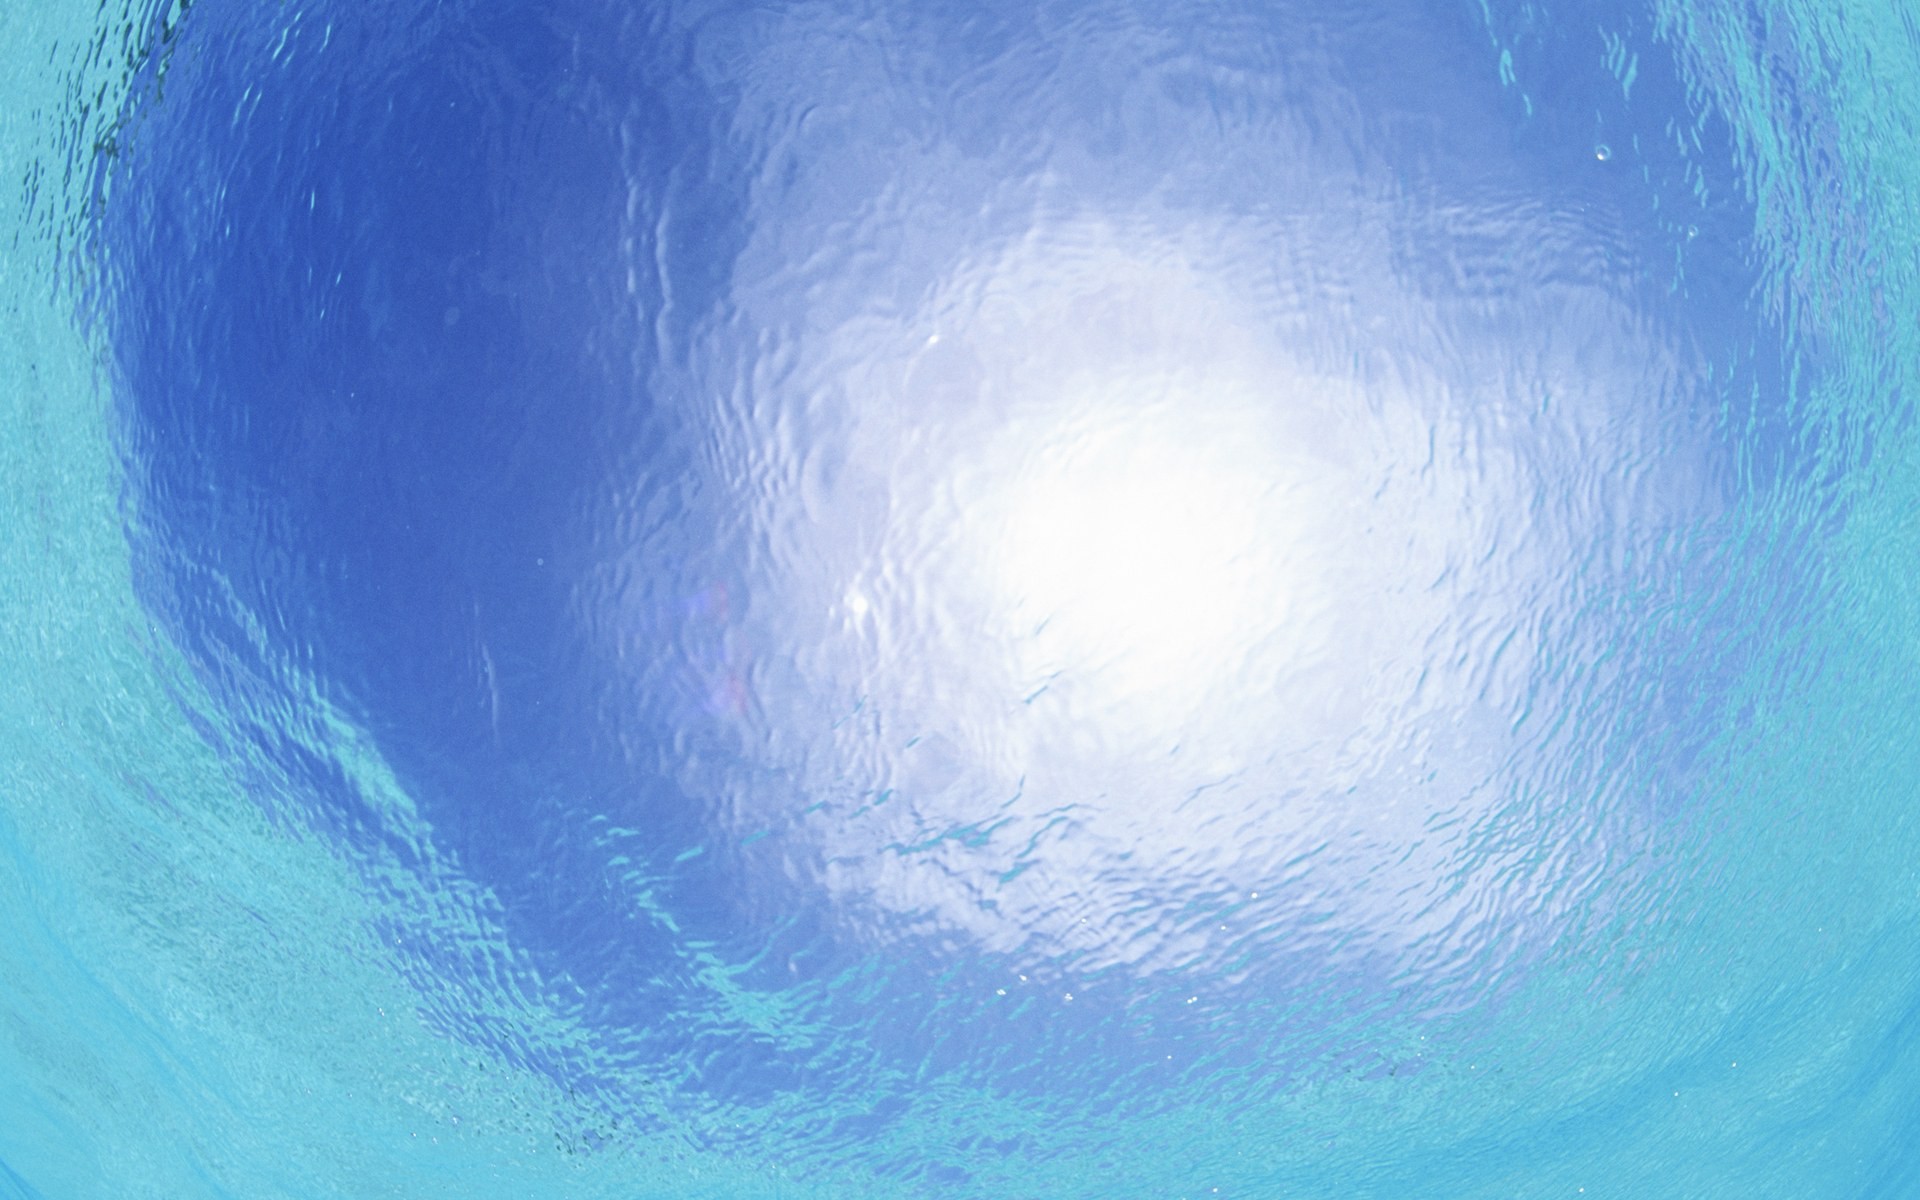 Maledivy vody a modrou oblohu #16 - 1920x1200